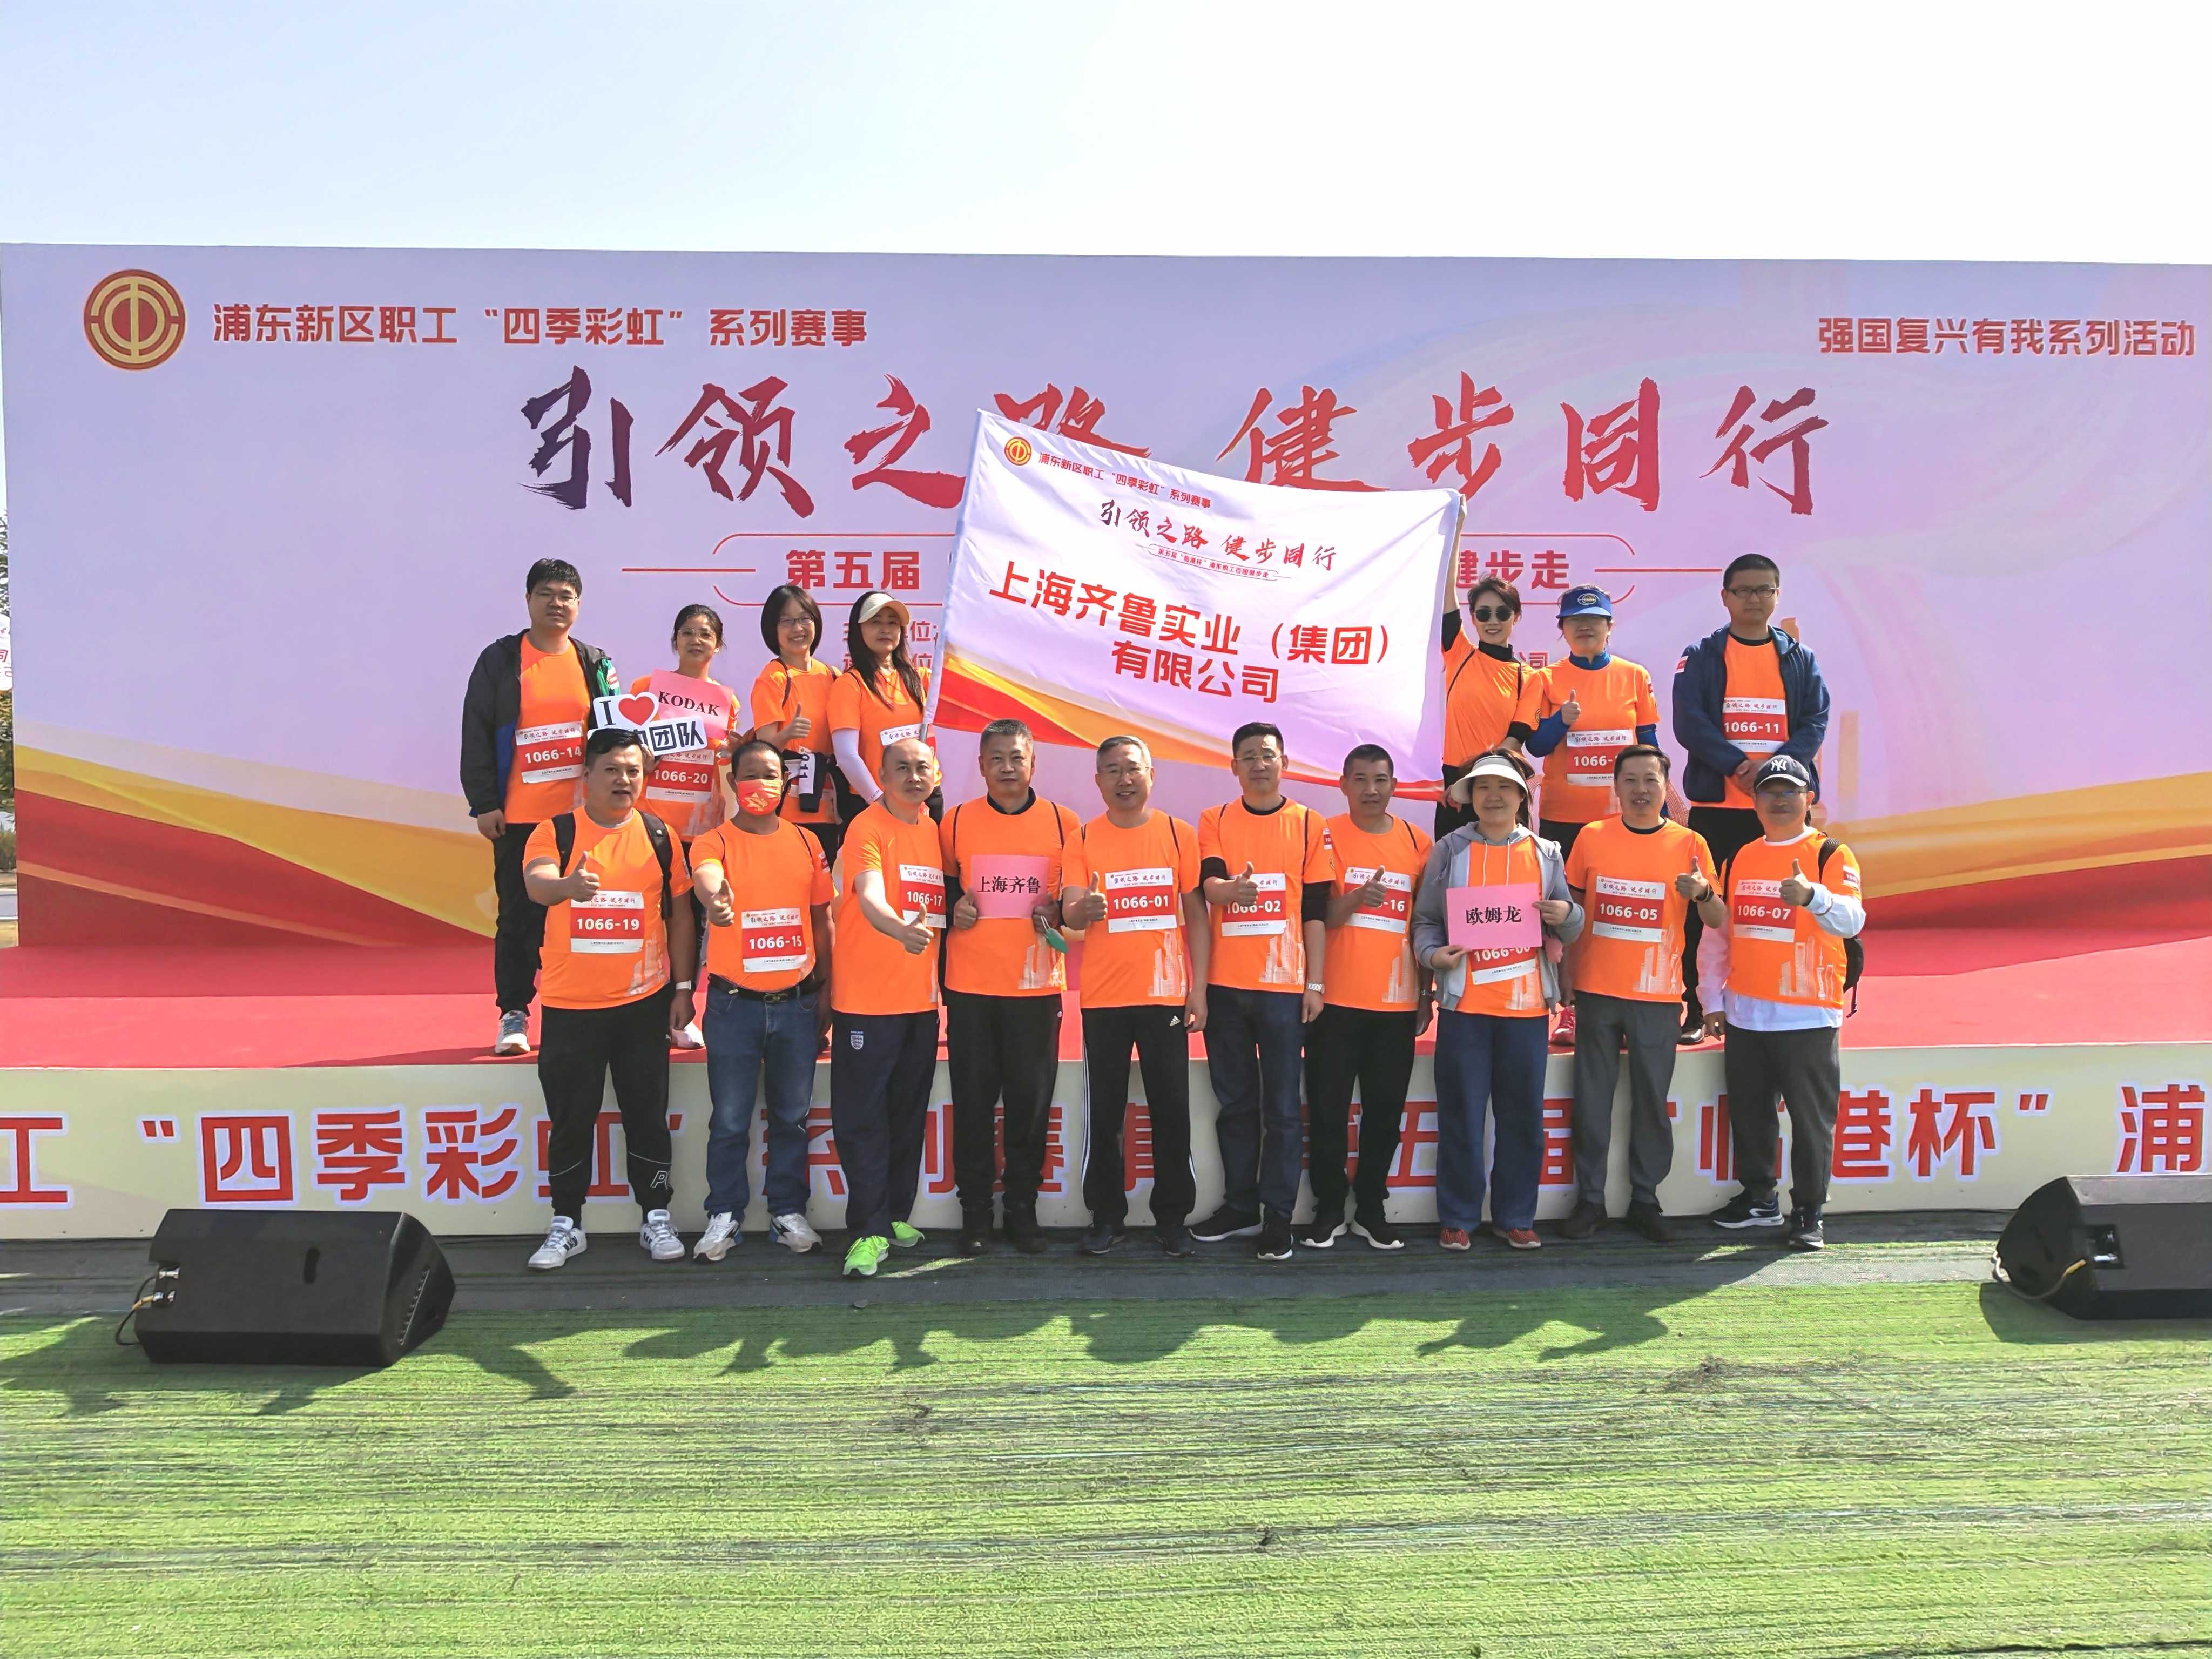 上海齐鲁代表队在第五届“临港杯”百团健步走活动中勇创佳绩